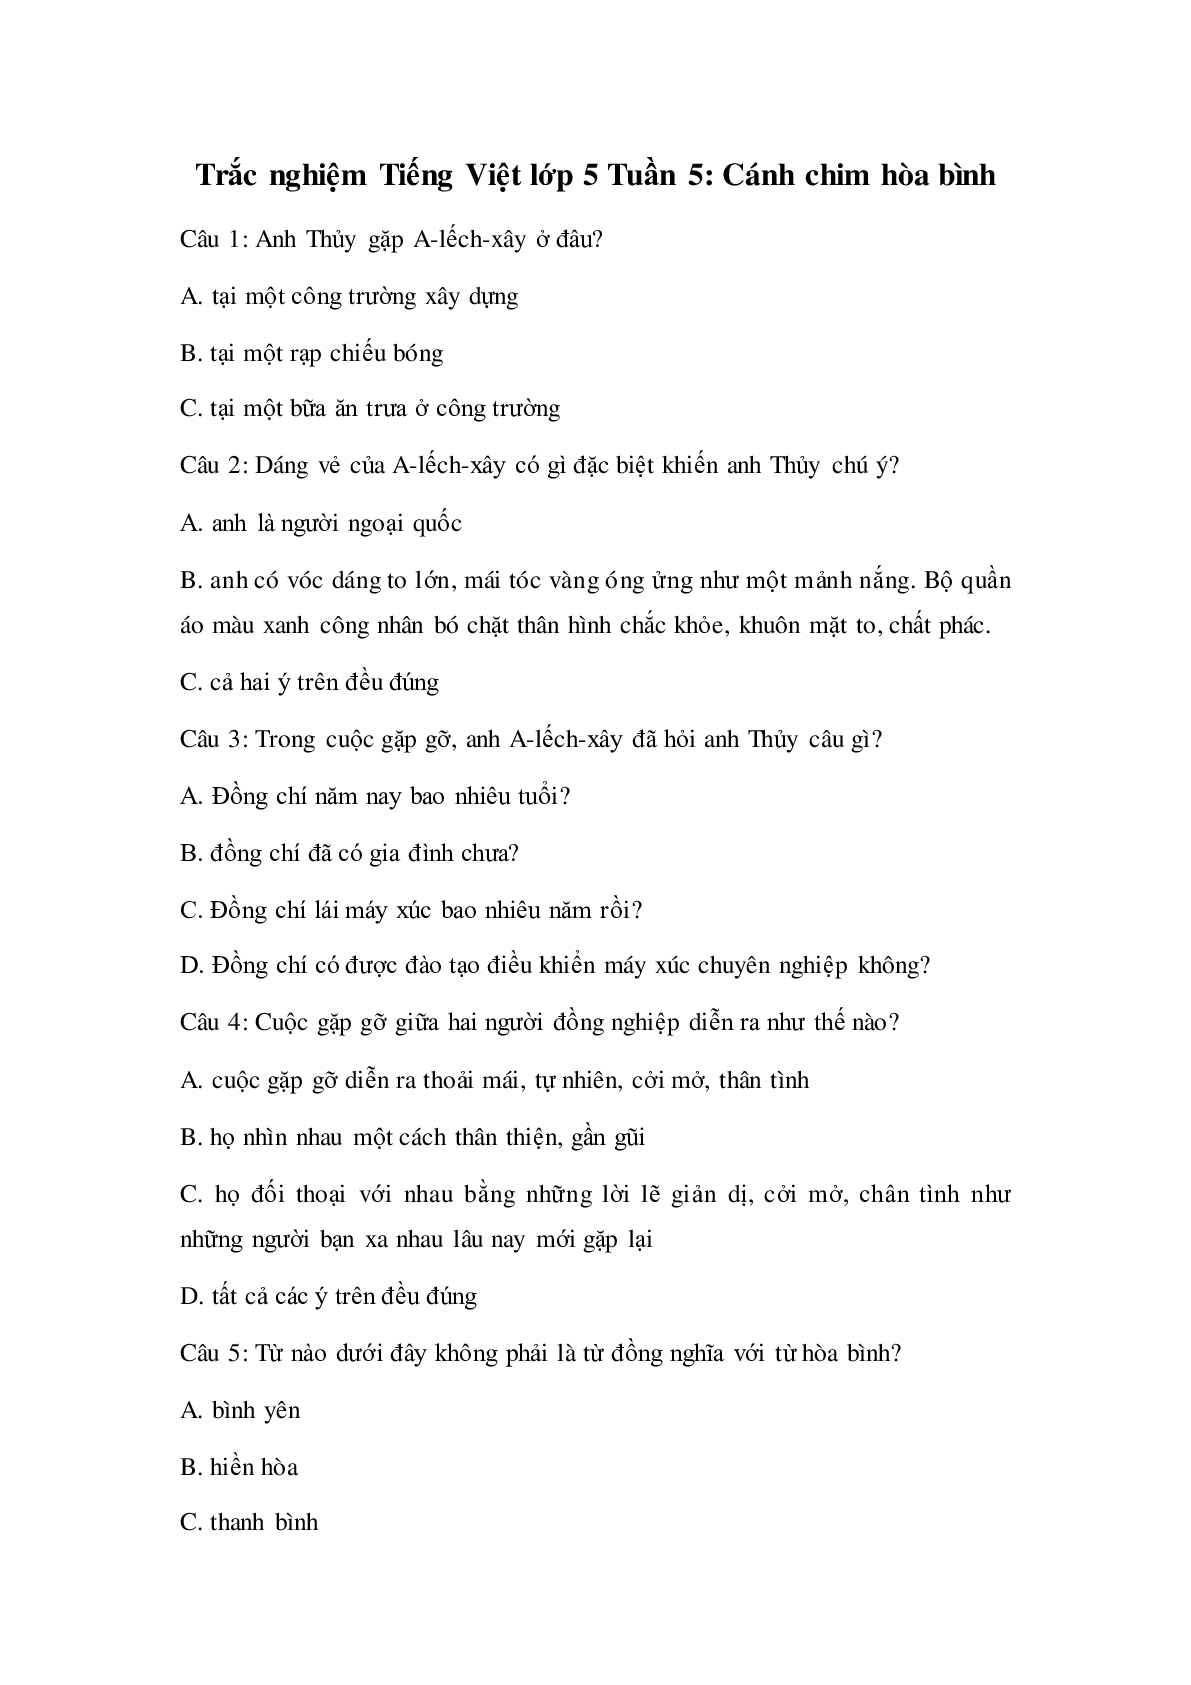 Trắc nghiệm Tiếng Việt lớp 5: Tuần 5 có đáp án (trang 1)